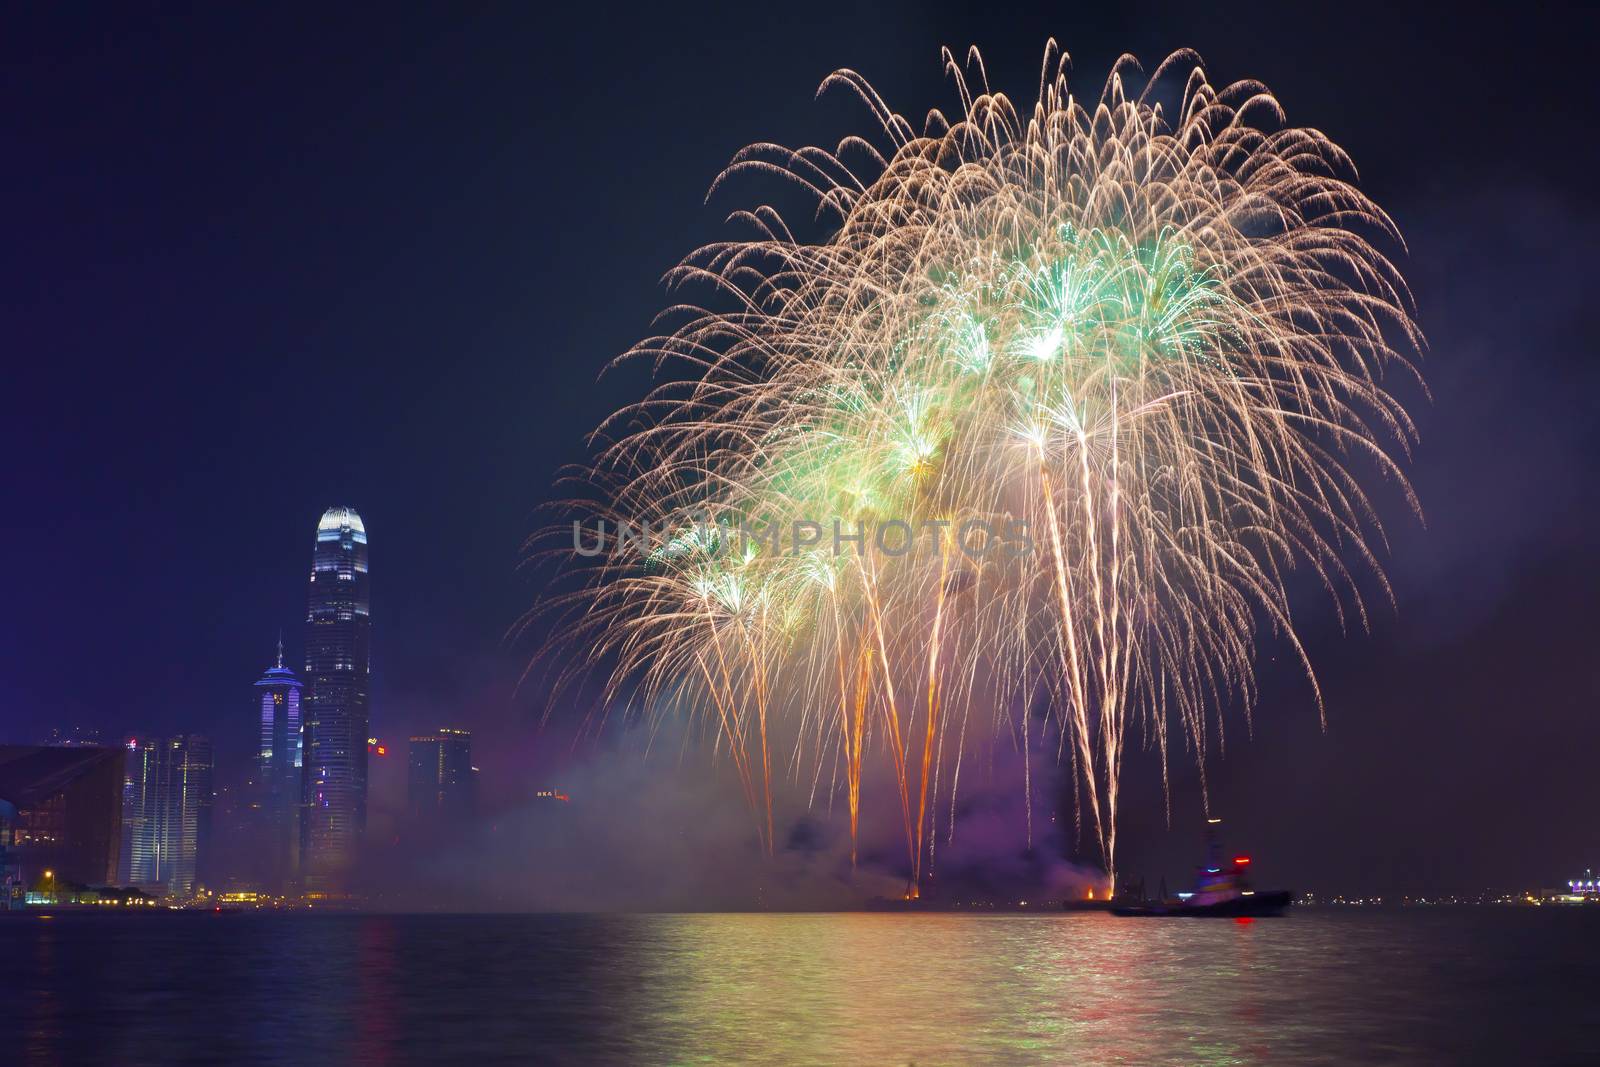 Hong Kong Chinese New Year fireworks 2014 by kawing921